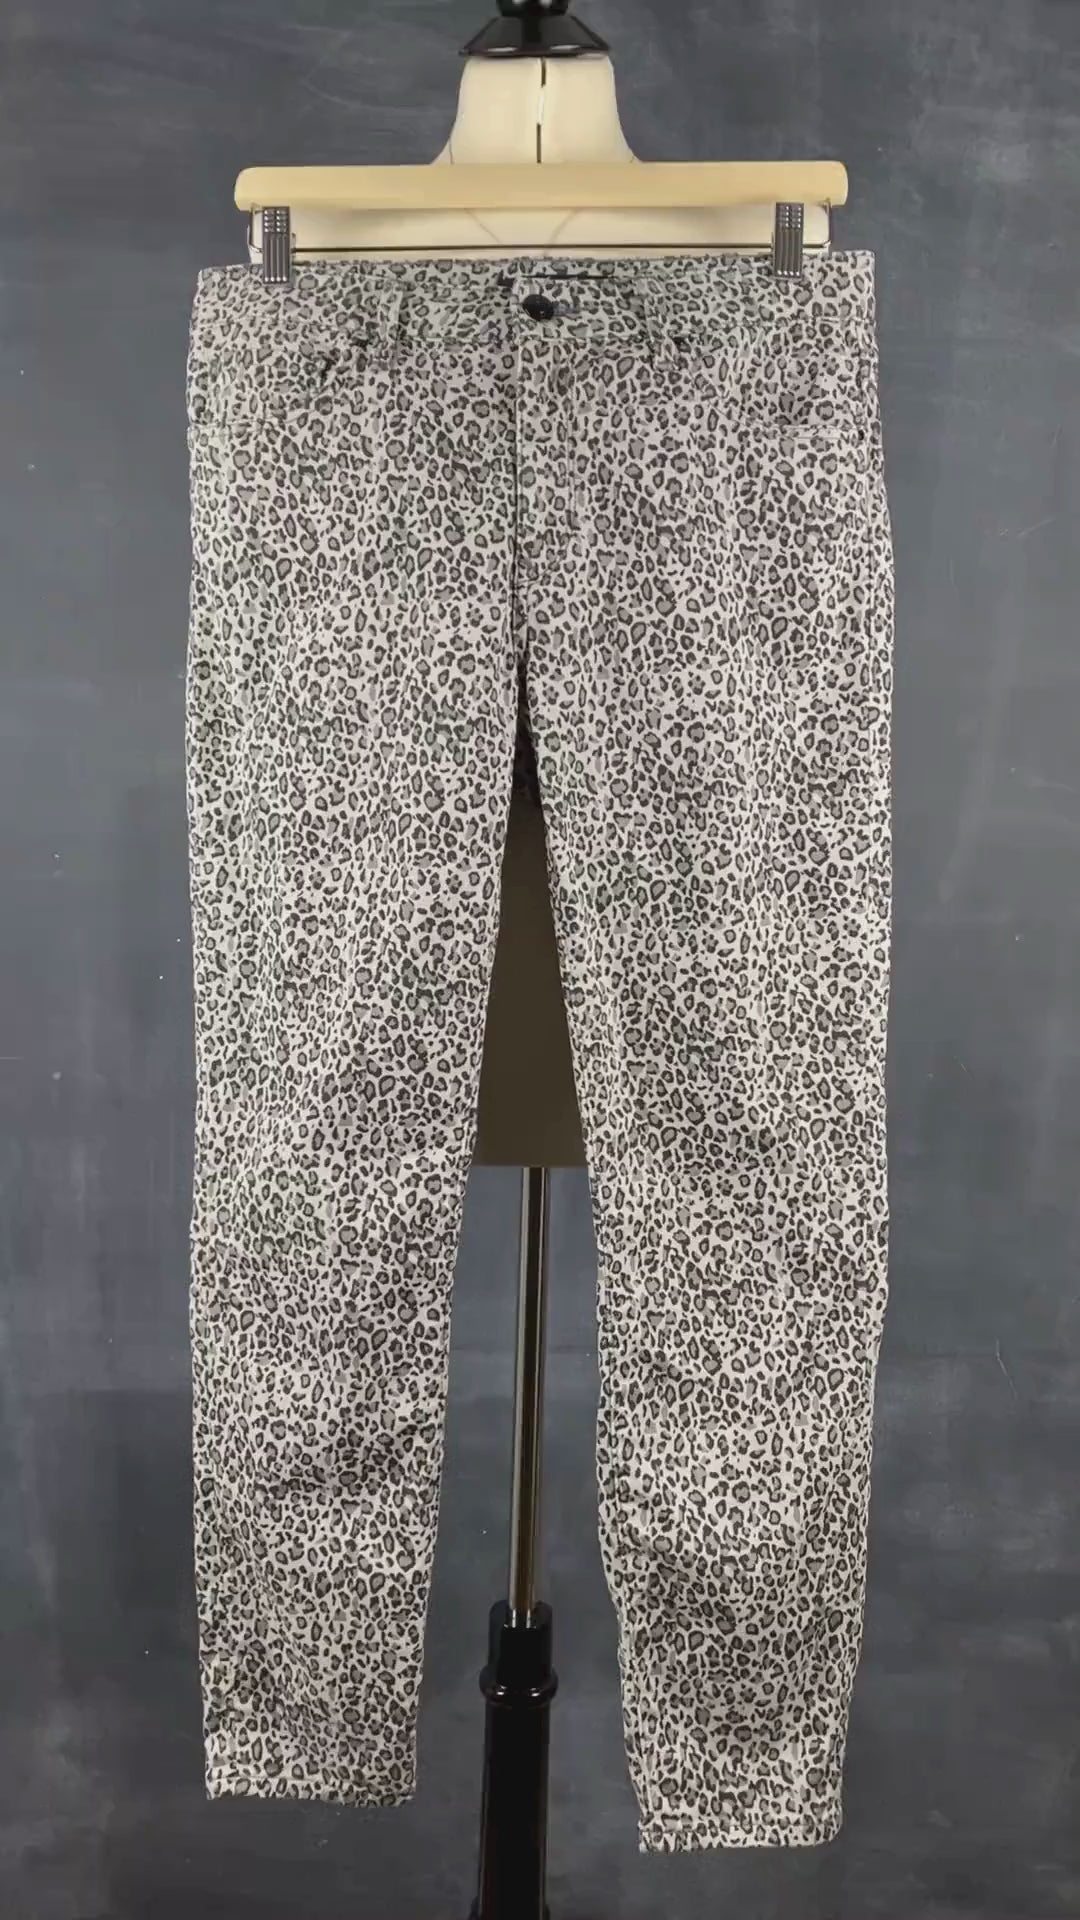 Pantalon denim coupe jeans étroit à motif léopard Mavi taille 30. Vue de la vidéo qui présente tous les détails du pantalon.